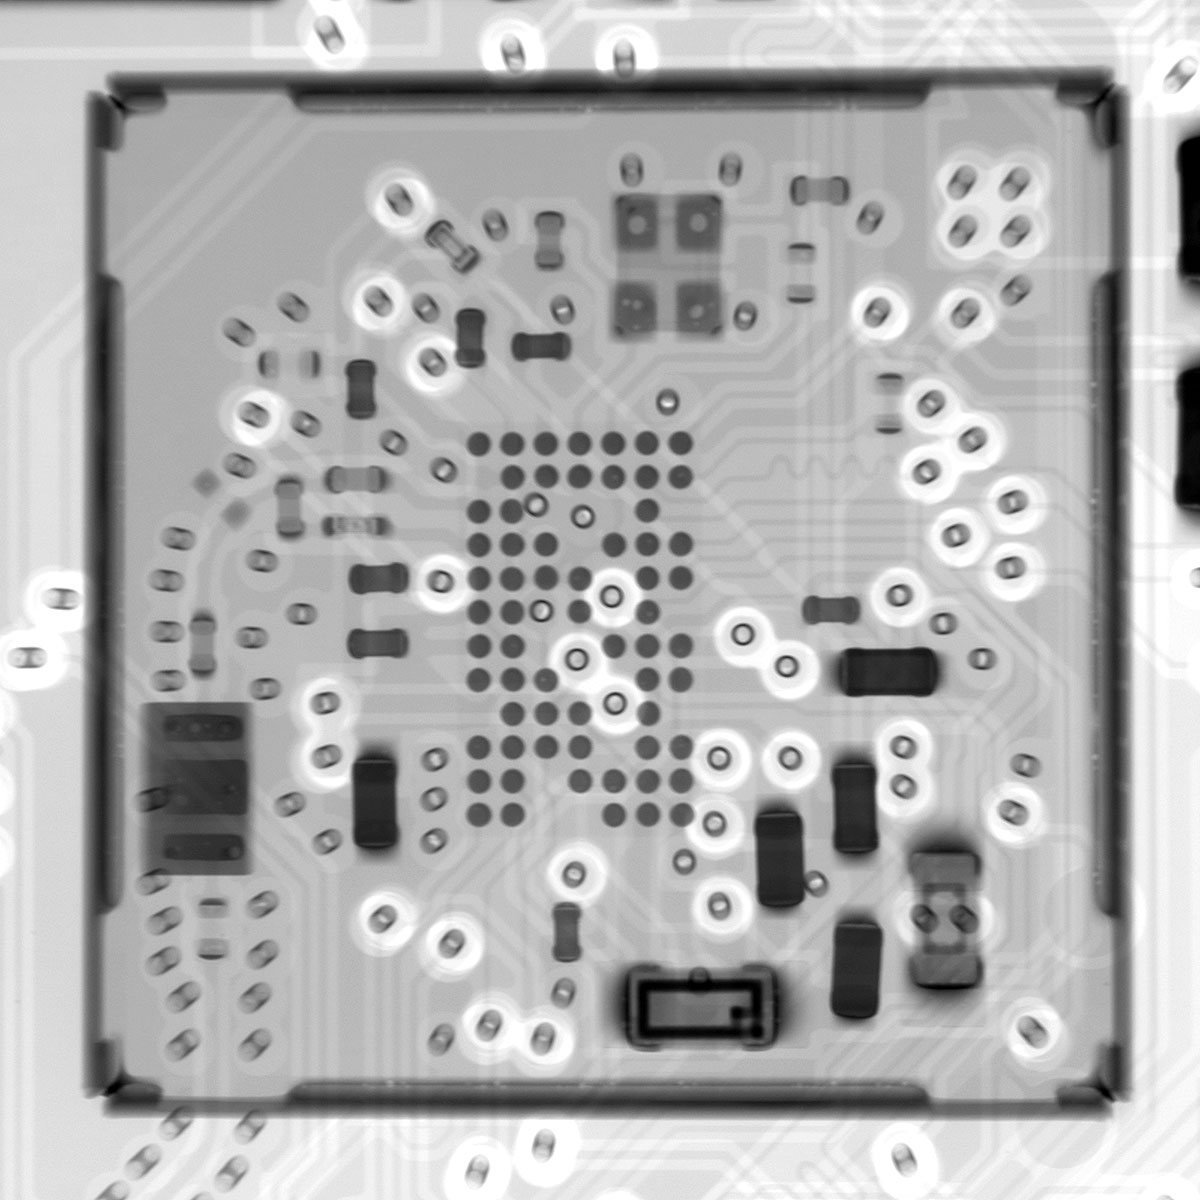 Raspberry Pi Zero 2 W WiFi Bluetooth undercover X-ray shot